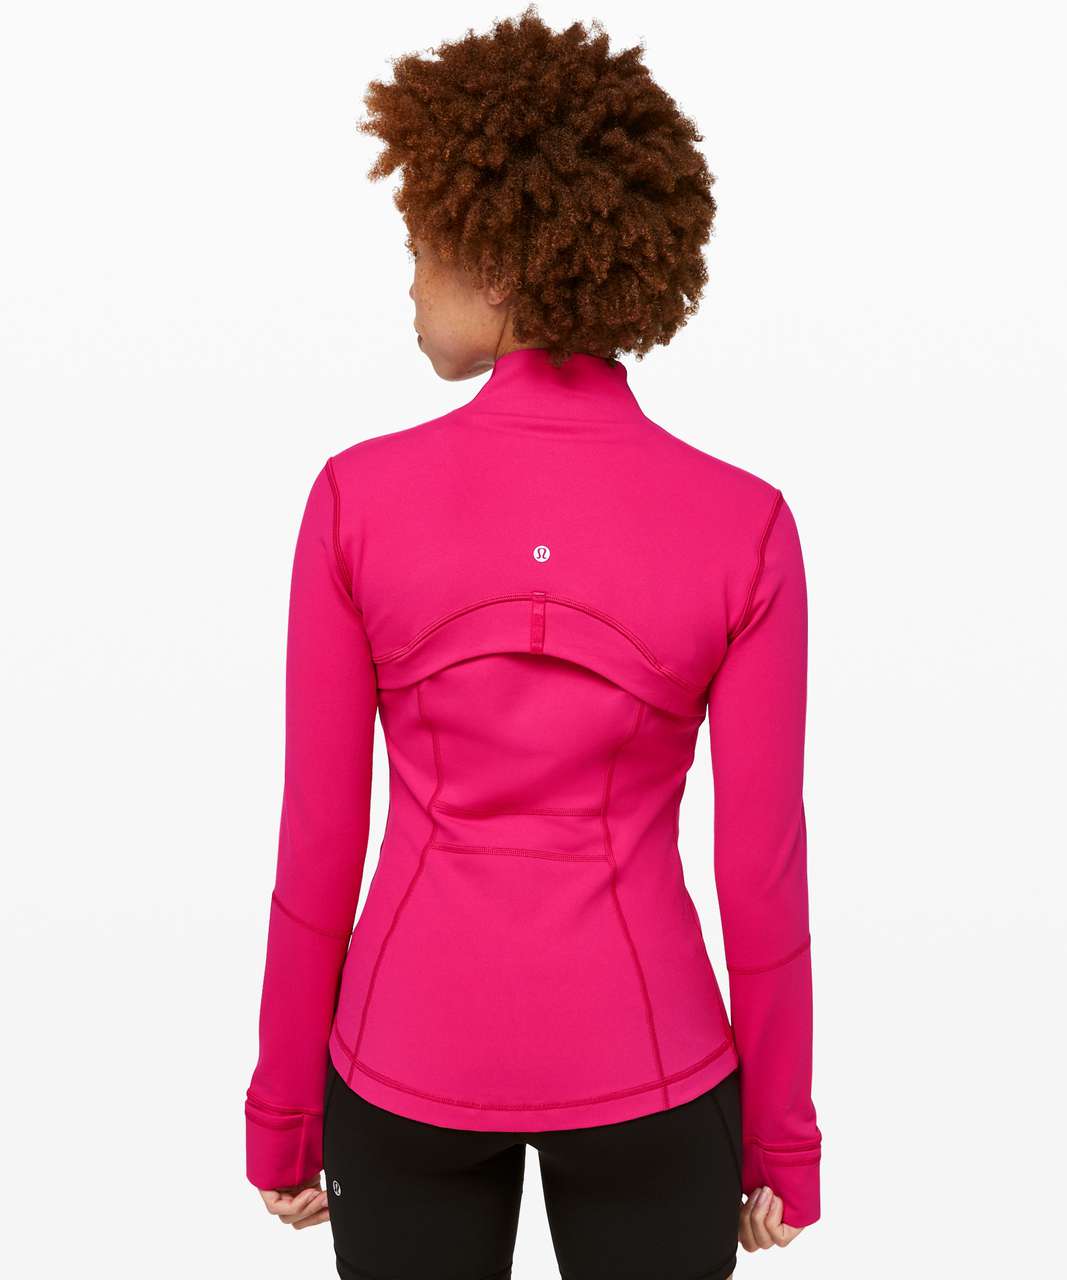 NWT Lululemon Define Jacket *Luon Pink Peony Size 4 - LW4AWKS PKPI